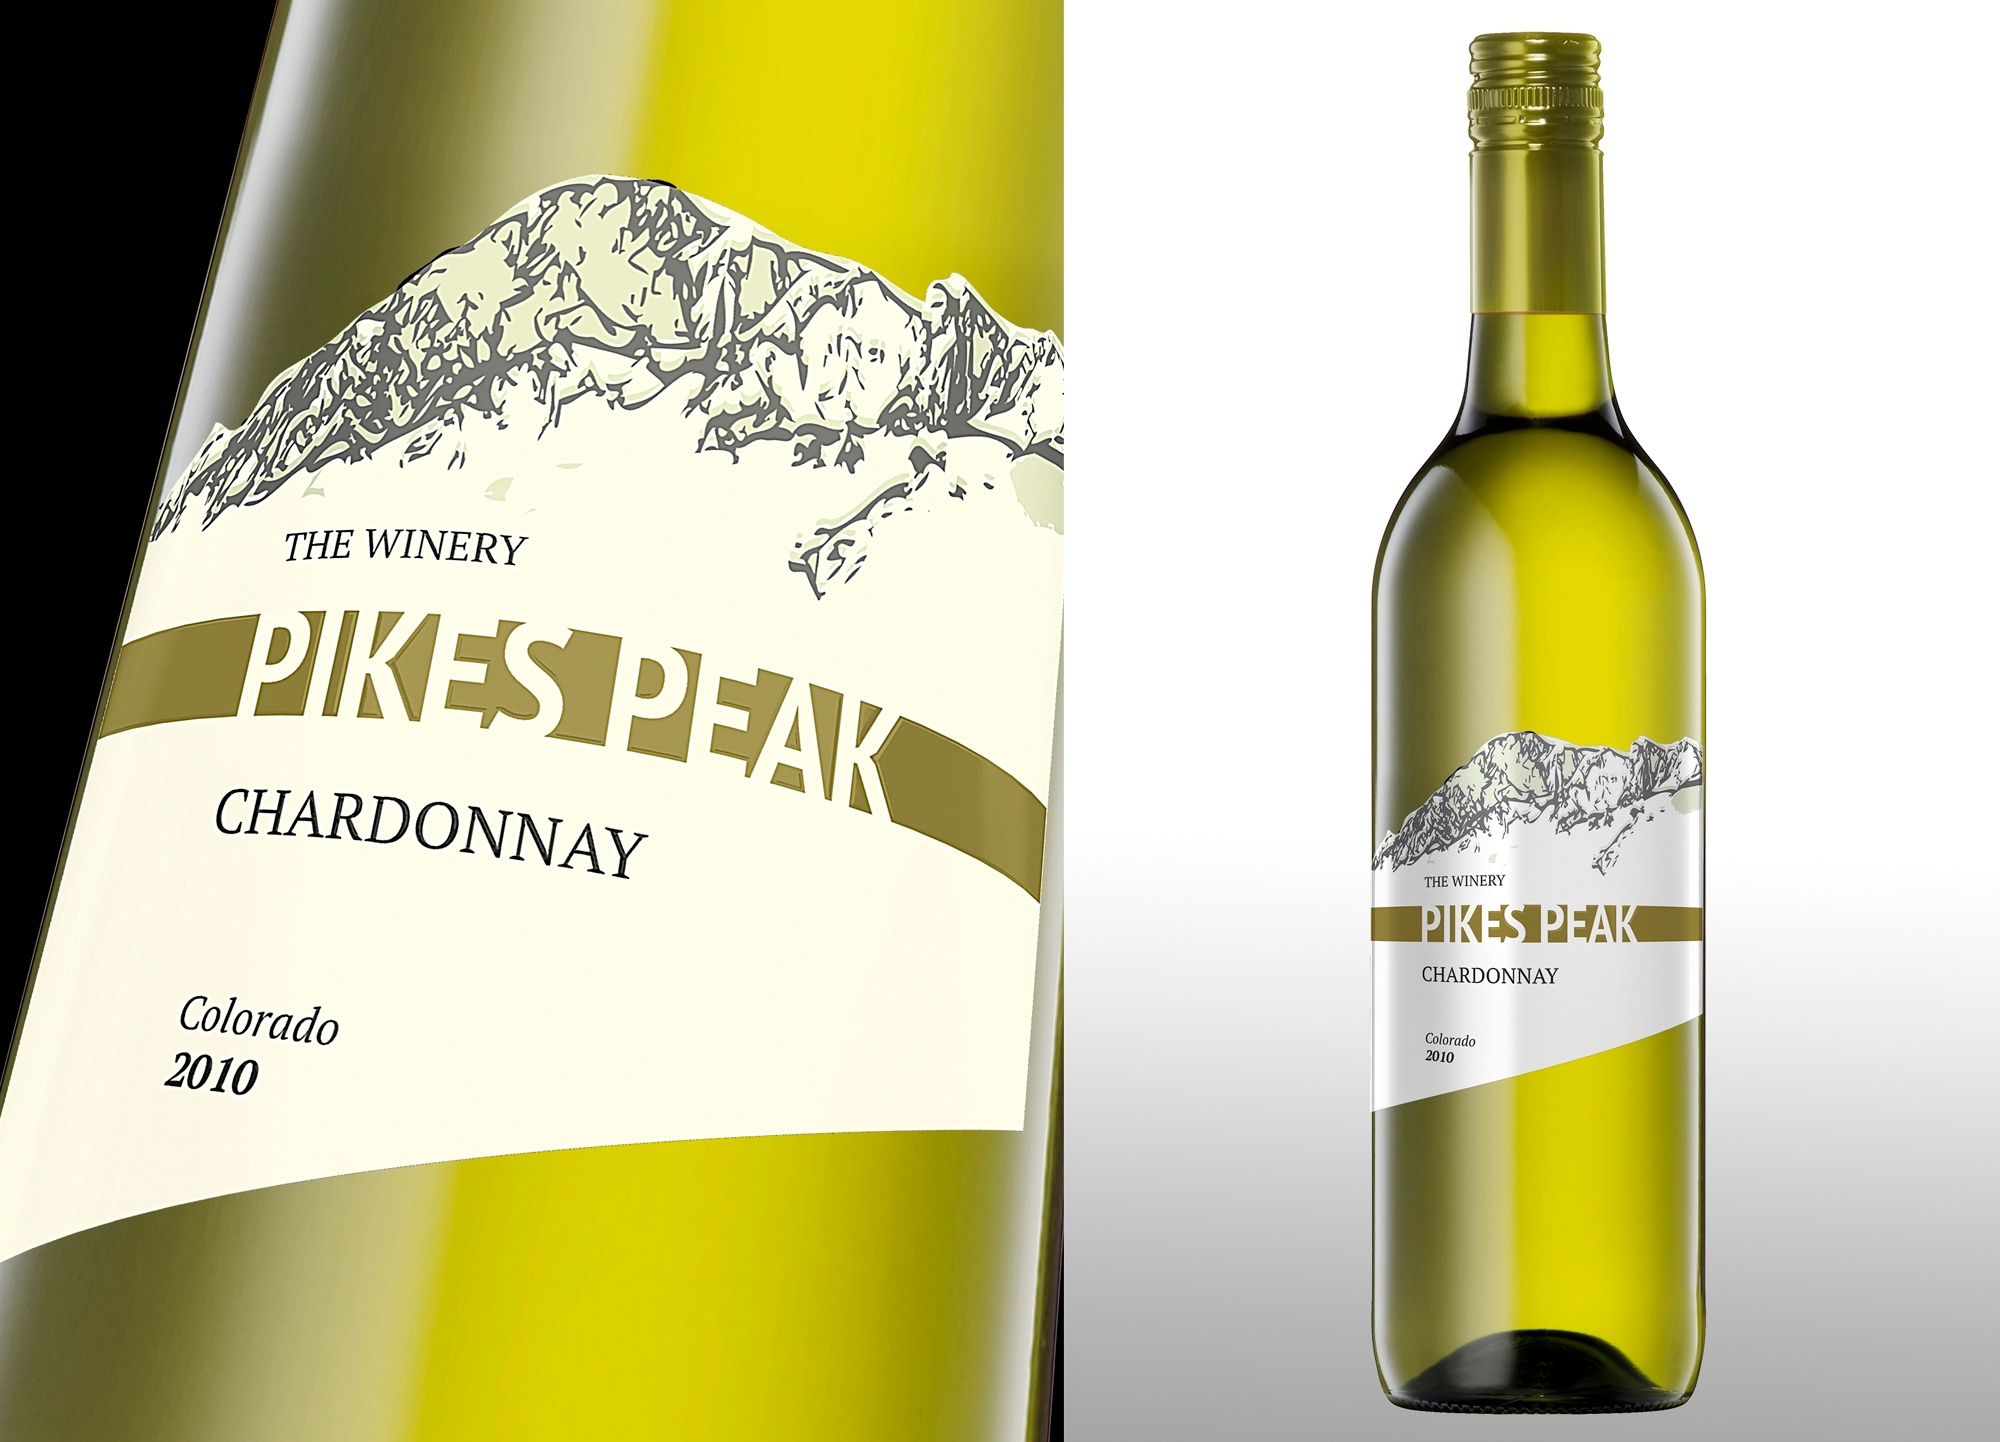 Pikes peak wines